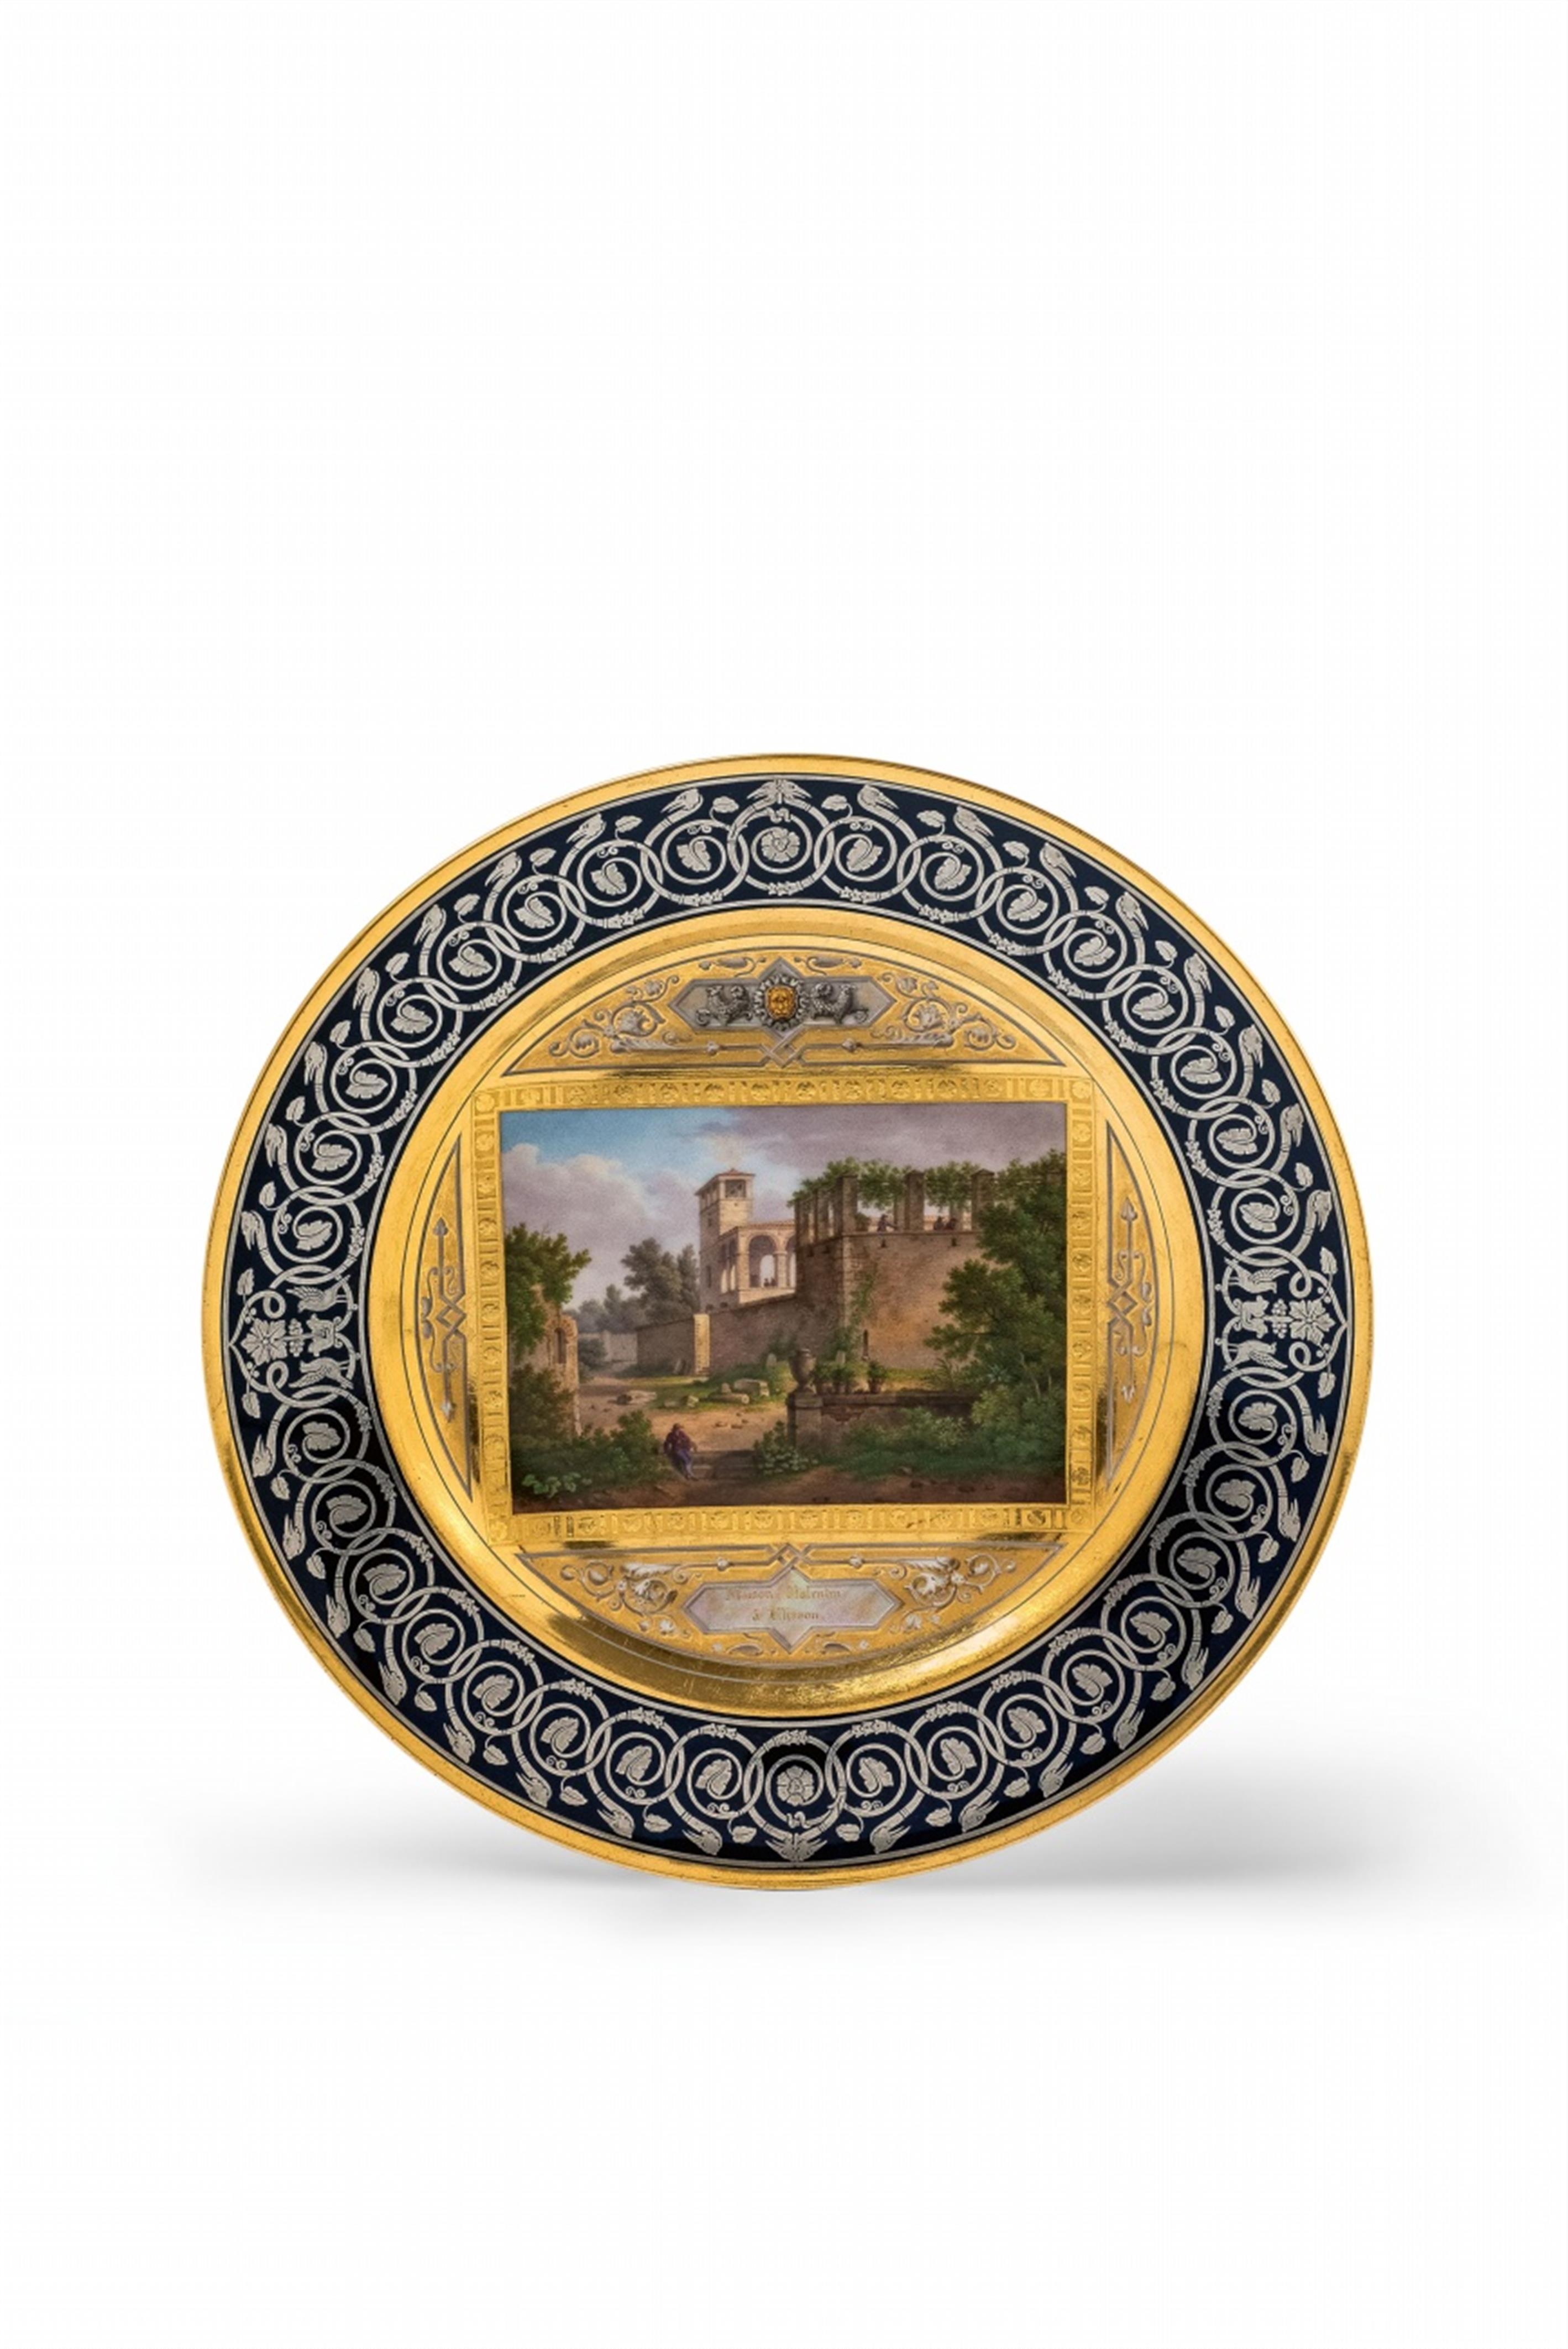 A Sèvres porcelain plate "Maison Valentin à Clisson" - image-1